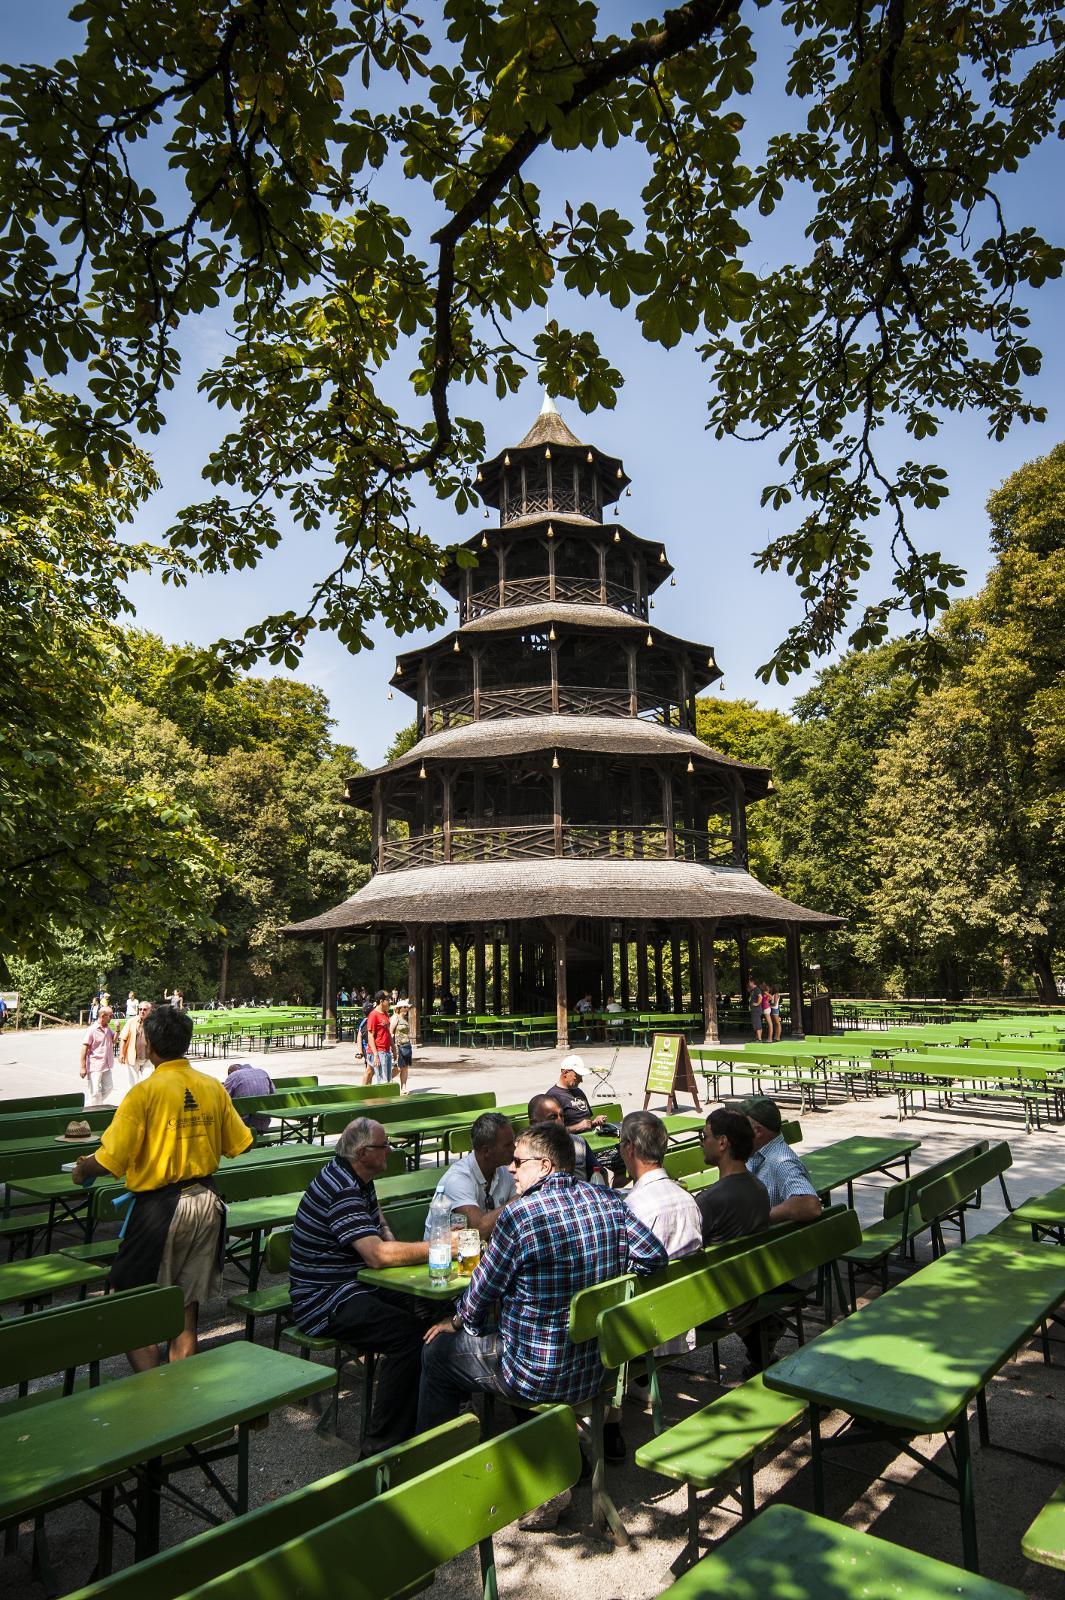 ENGLISCHER GARTEN: Det kinesiske tårn i Englischer Garten er sentrum for byens nest største og kanskje mest gjenkjennelige ølhage. I sommermånedene kan opp til 7000 mennesker samles her.